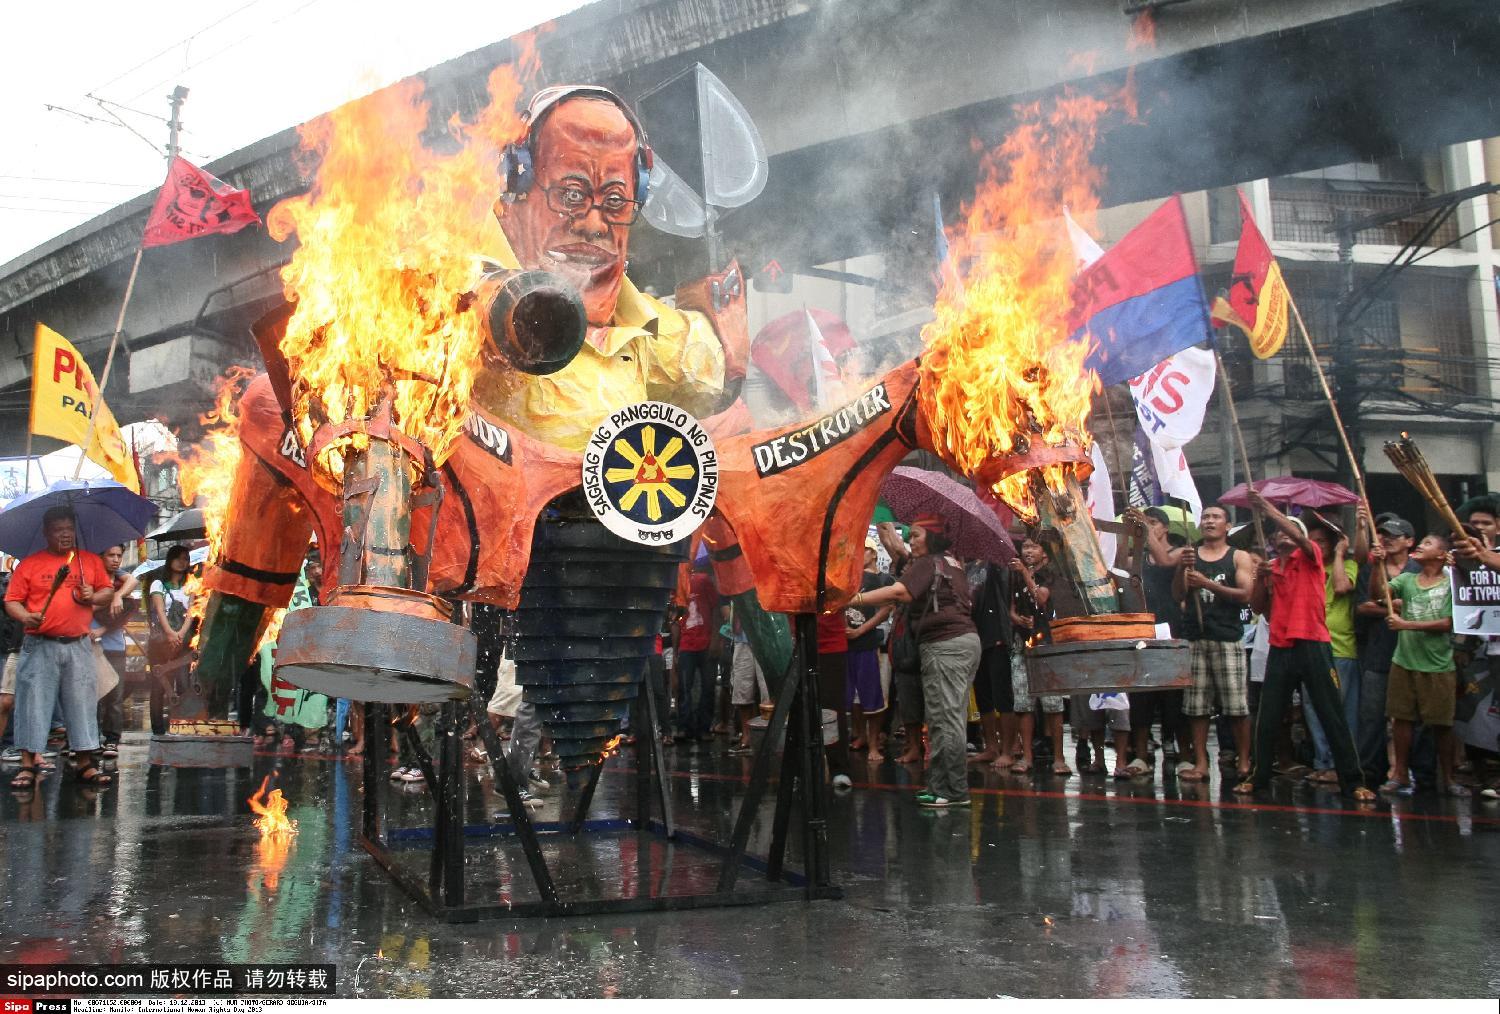 菲民众游行焚烧阿基诺人像纪念世界人权日